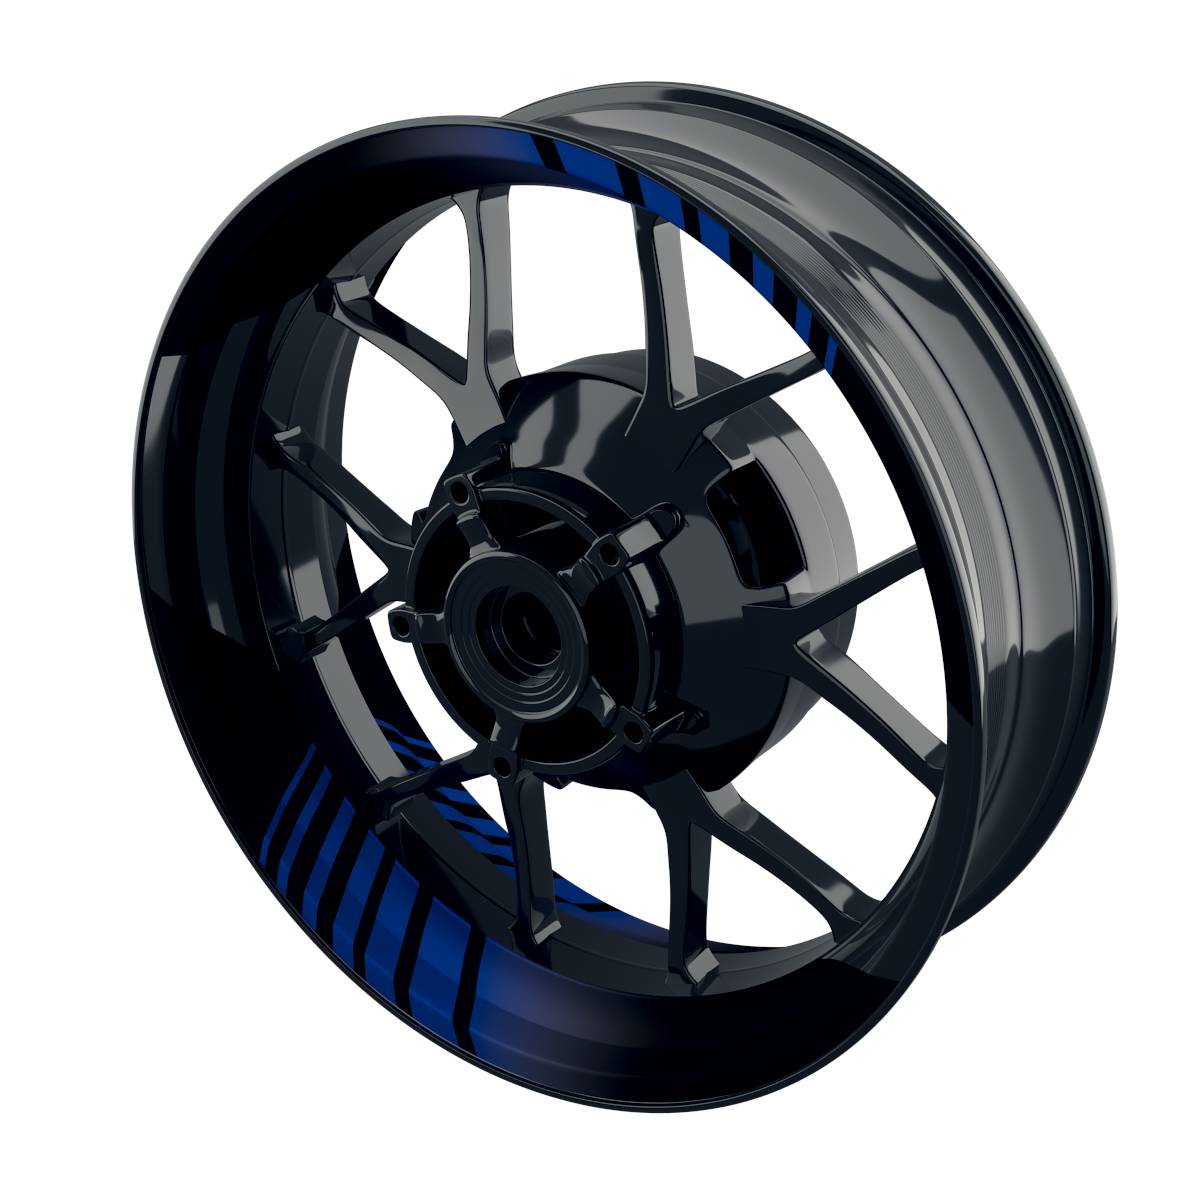 Hypnotic black Rim Decals Wheelsticker Premium splitted